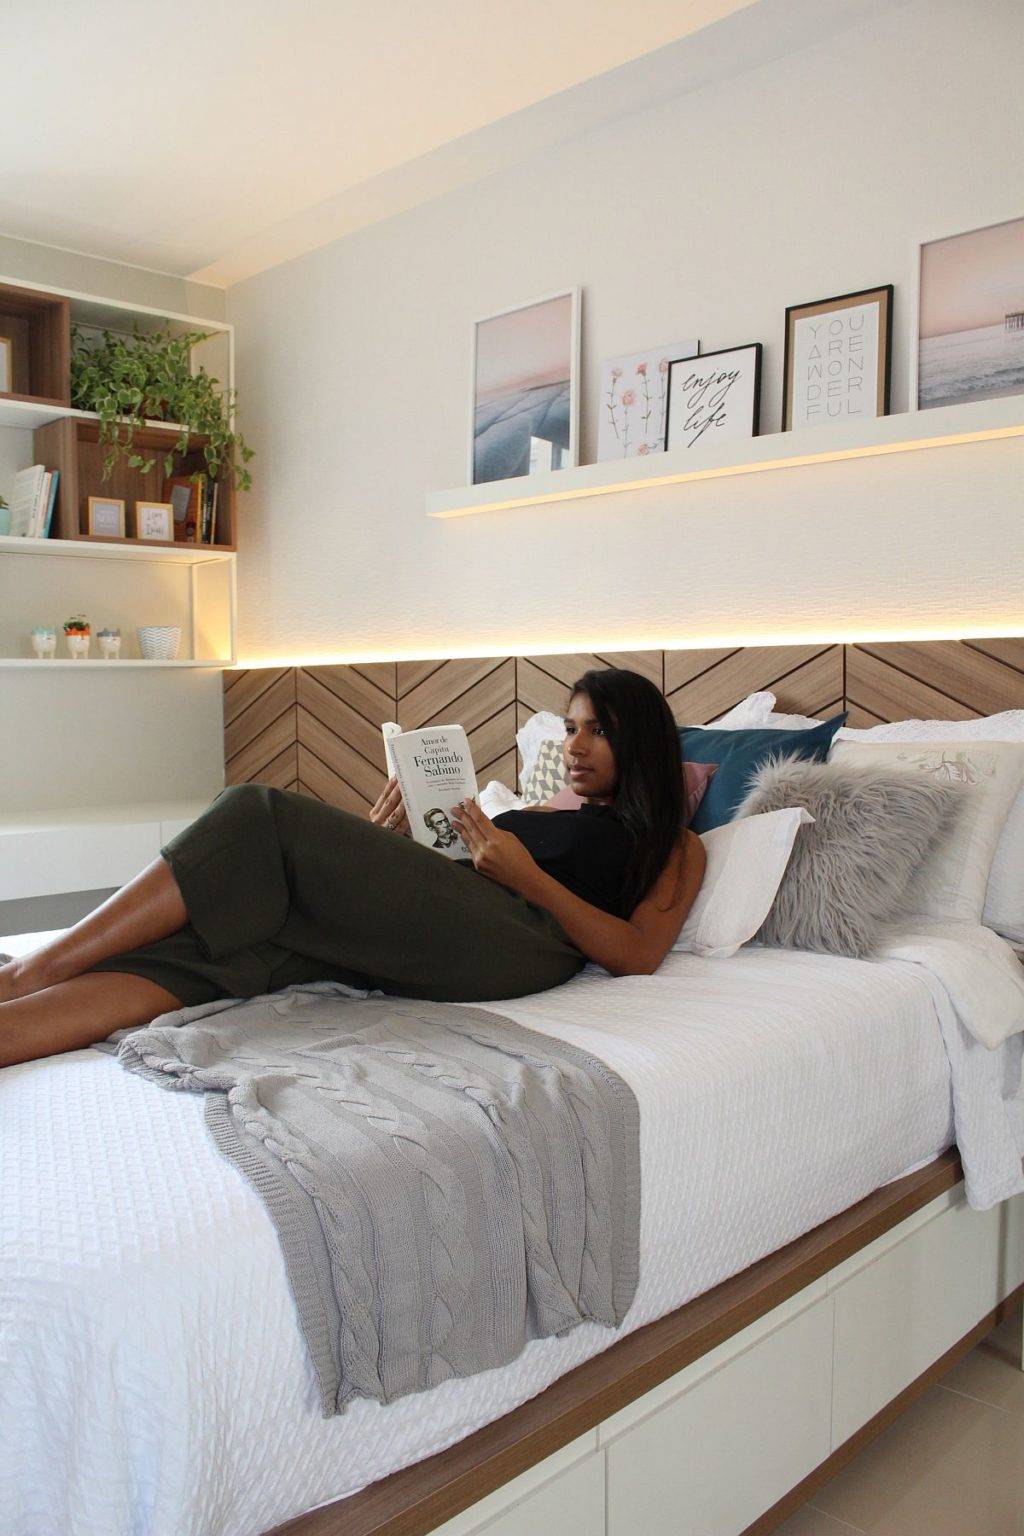 Phòng ngủ hiện đại với bảng màu trắng và nâu gỗ kết hợp hài hòa cùng hệ thống chiếu sáng thông minh.